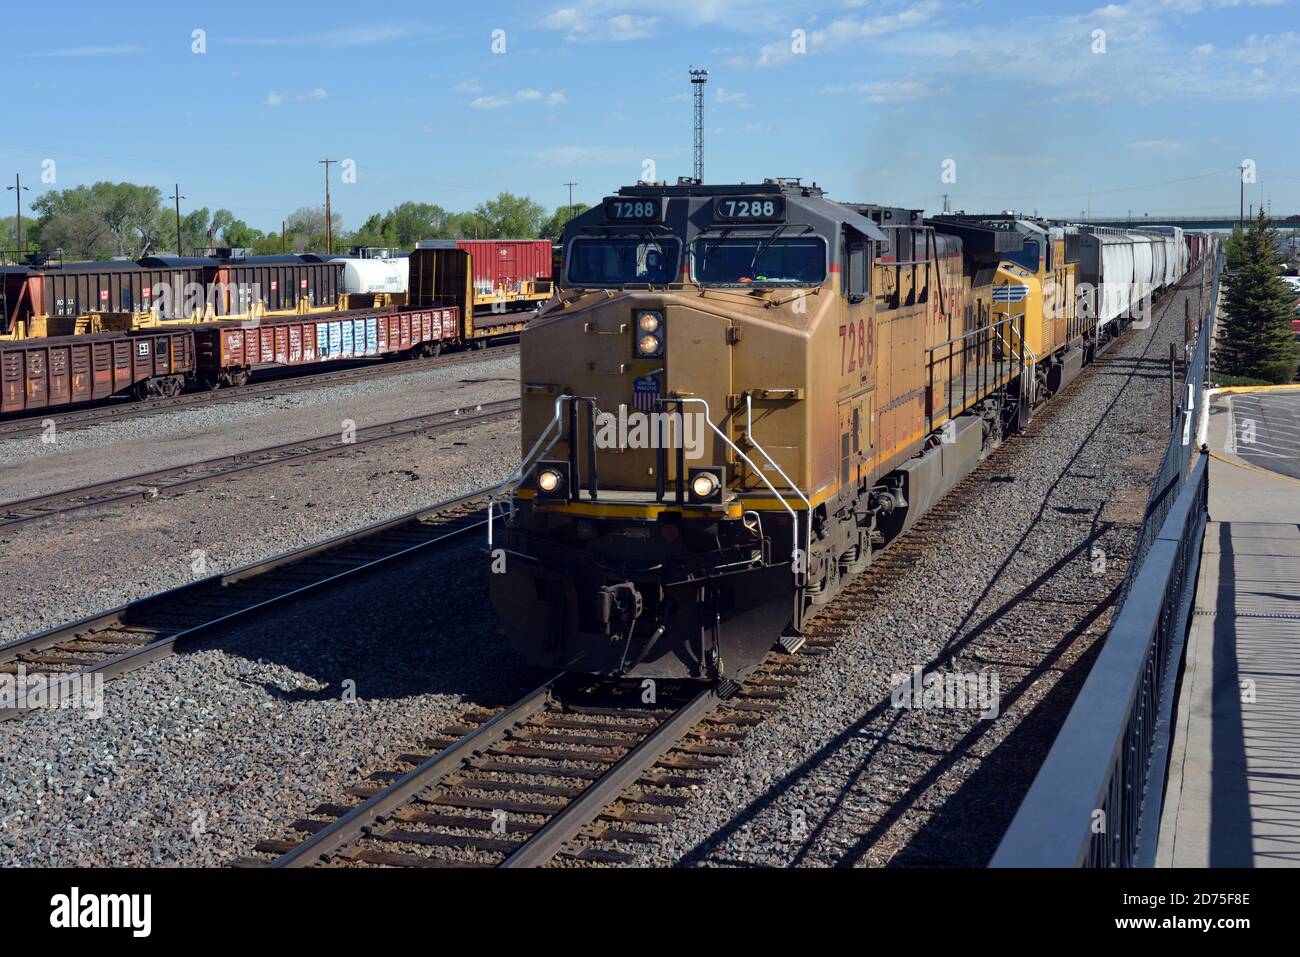 Deux locomotives diesel Union Pacific transportent un train de marchandises conteneurisées à travers Laramie, Wyoming, États-Unis, le matin de juin. Banque D'Images